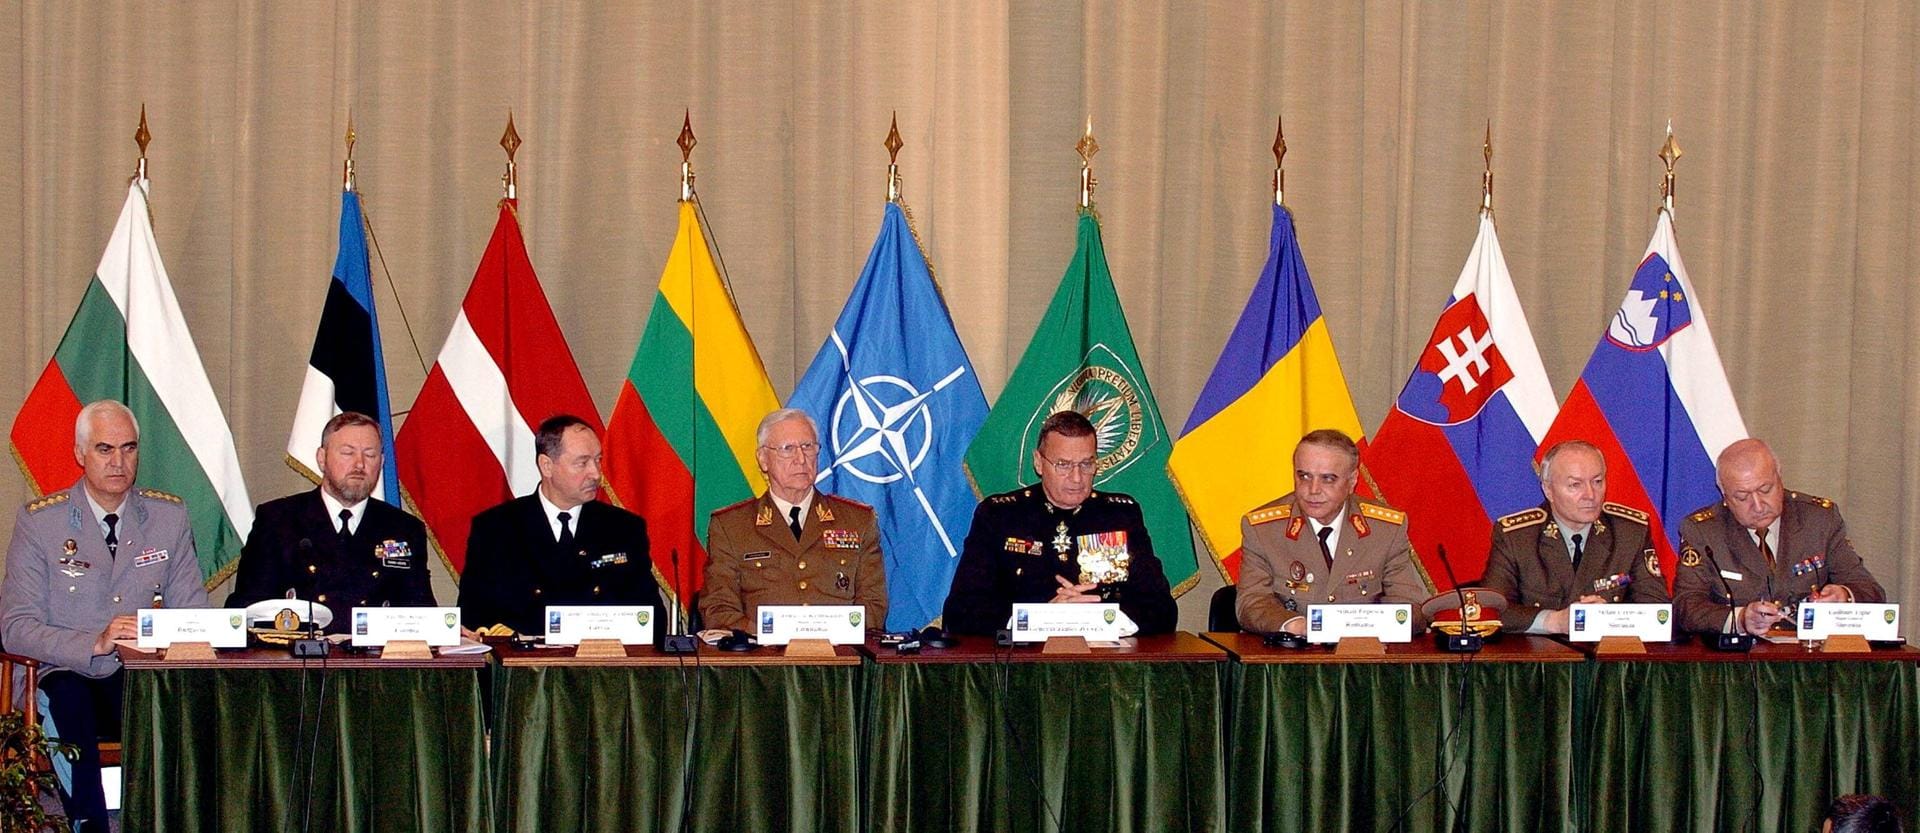 2004: Das Bündnis nimmt Bulgarien, Rumänien, die Slowakei, Slowenien sowie die ehemaligen Sowjetrepubliken Estland, Lettland und Litauen auf.